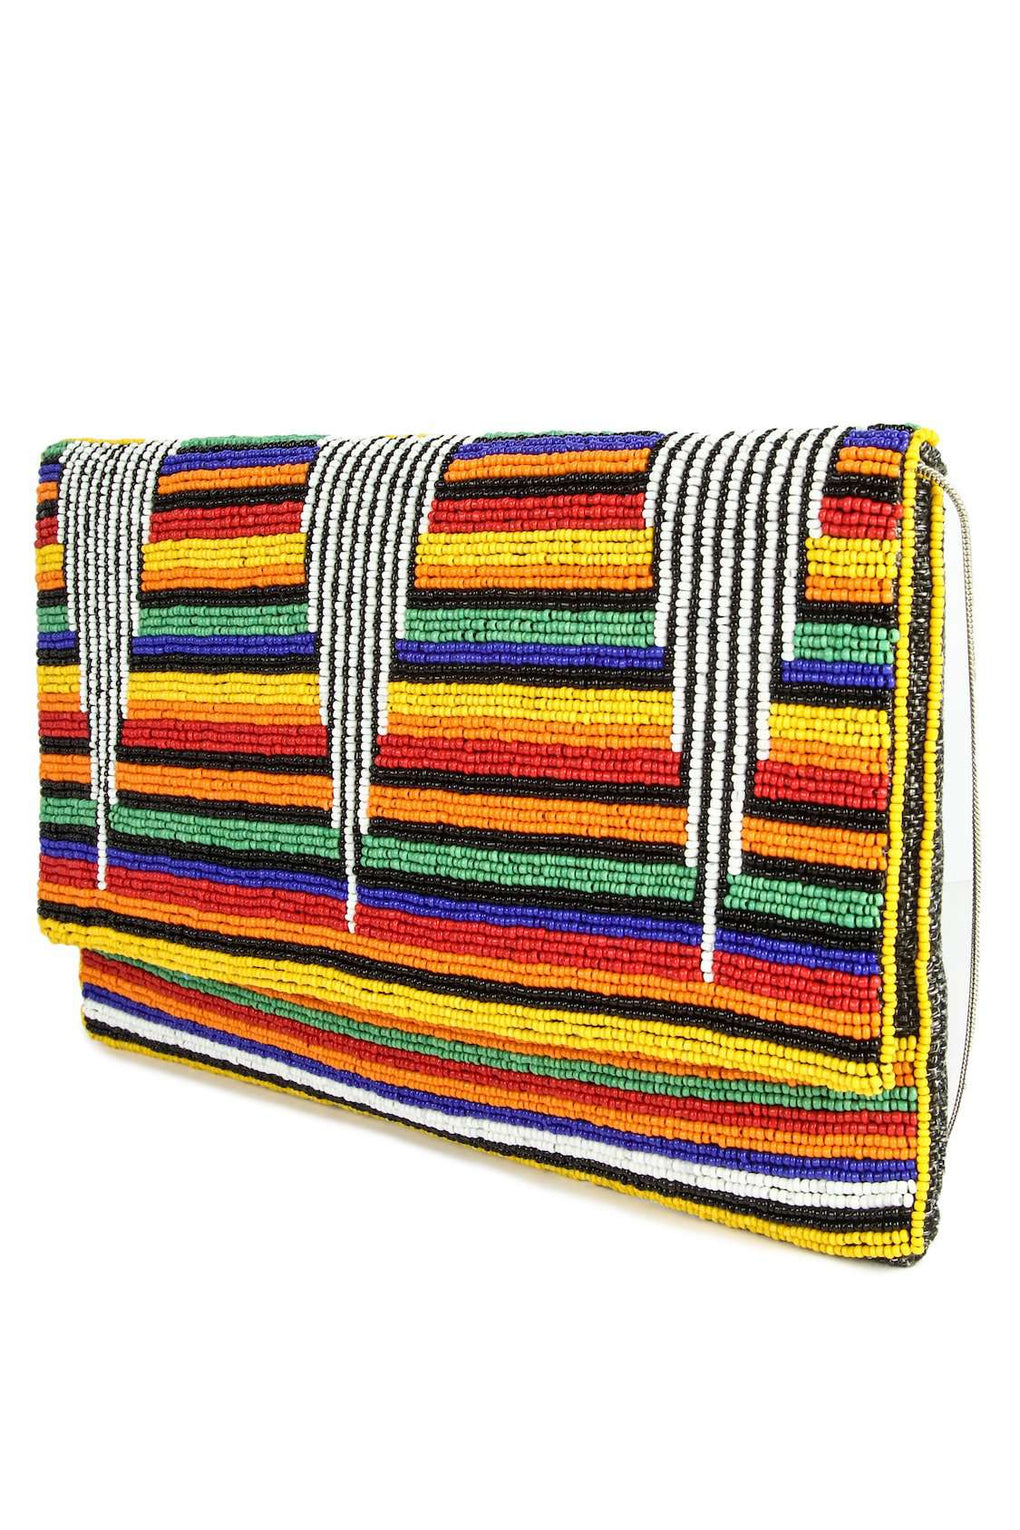 Lily Rainbow Multi Colour Beaded Handbag